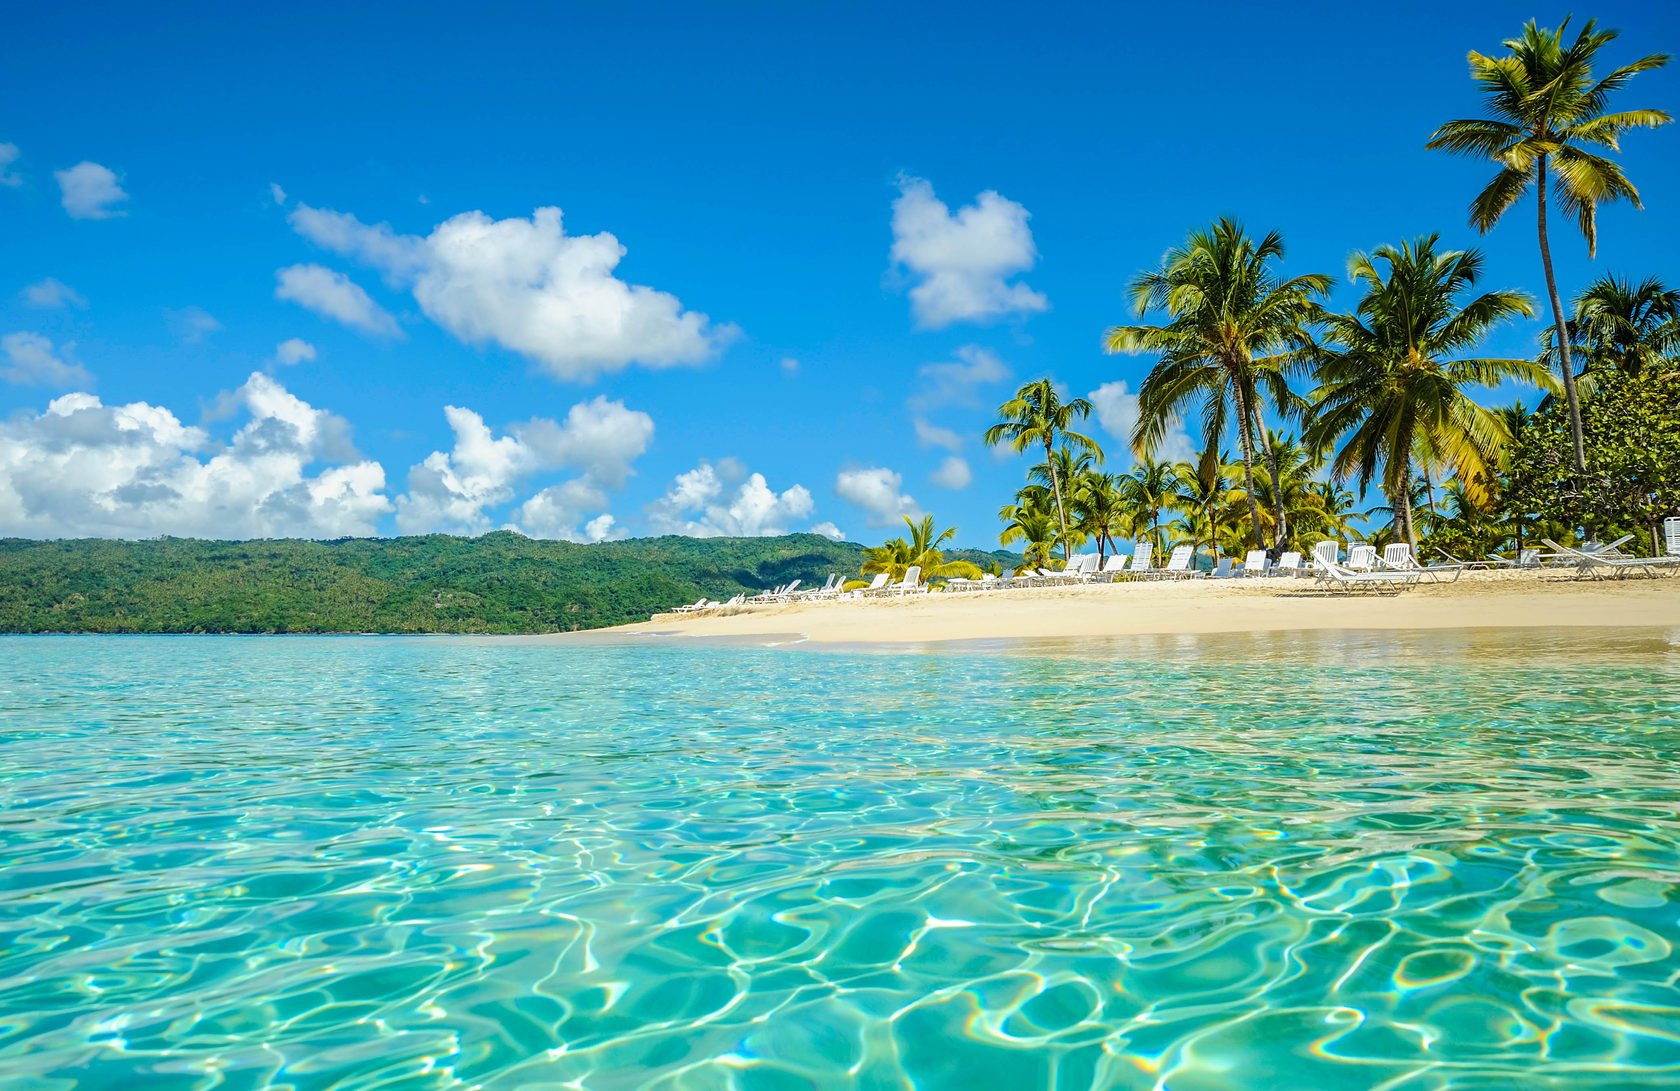 Комфортный пляжный отдых без визы в Доминикане